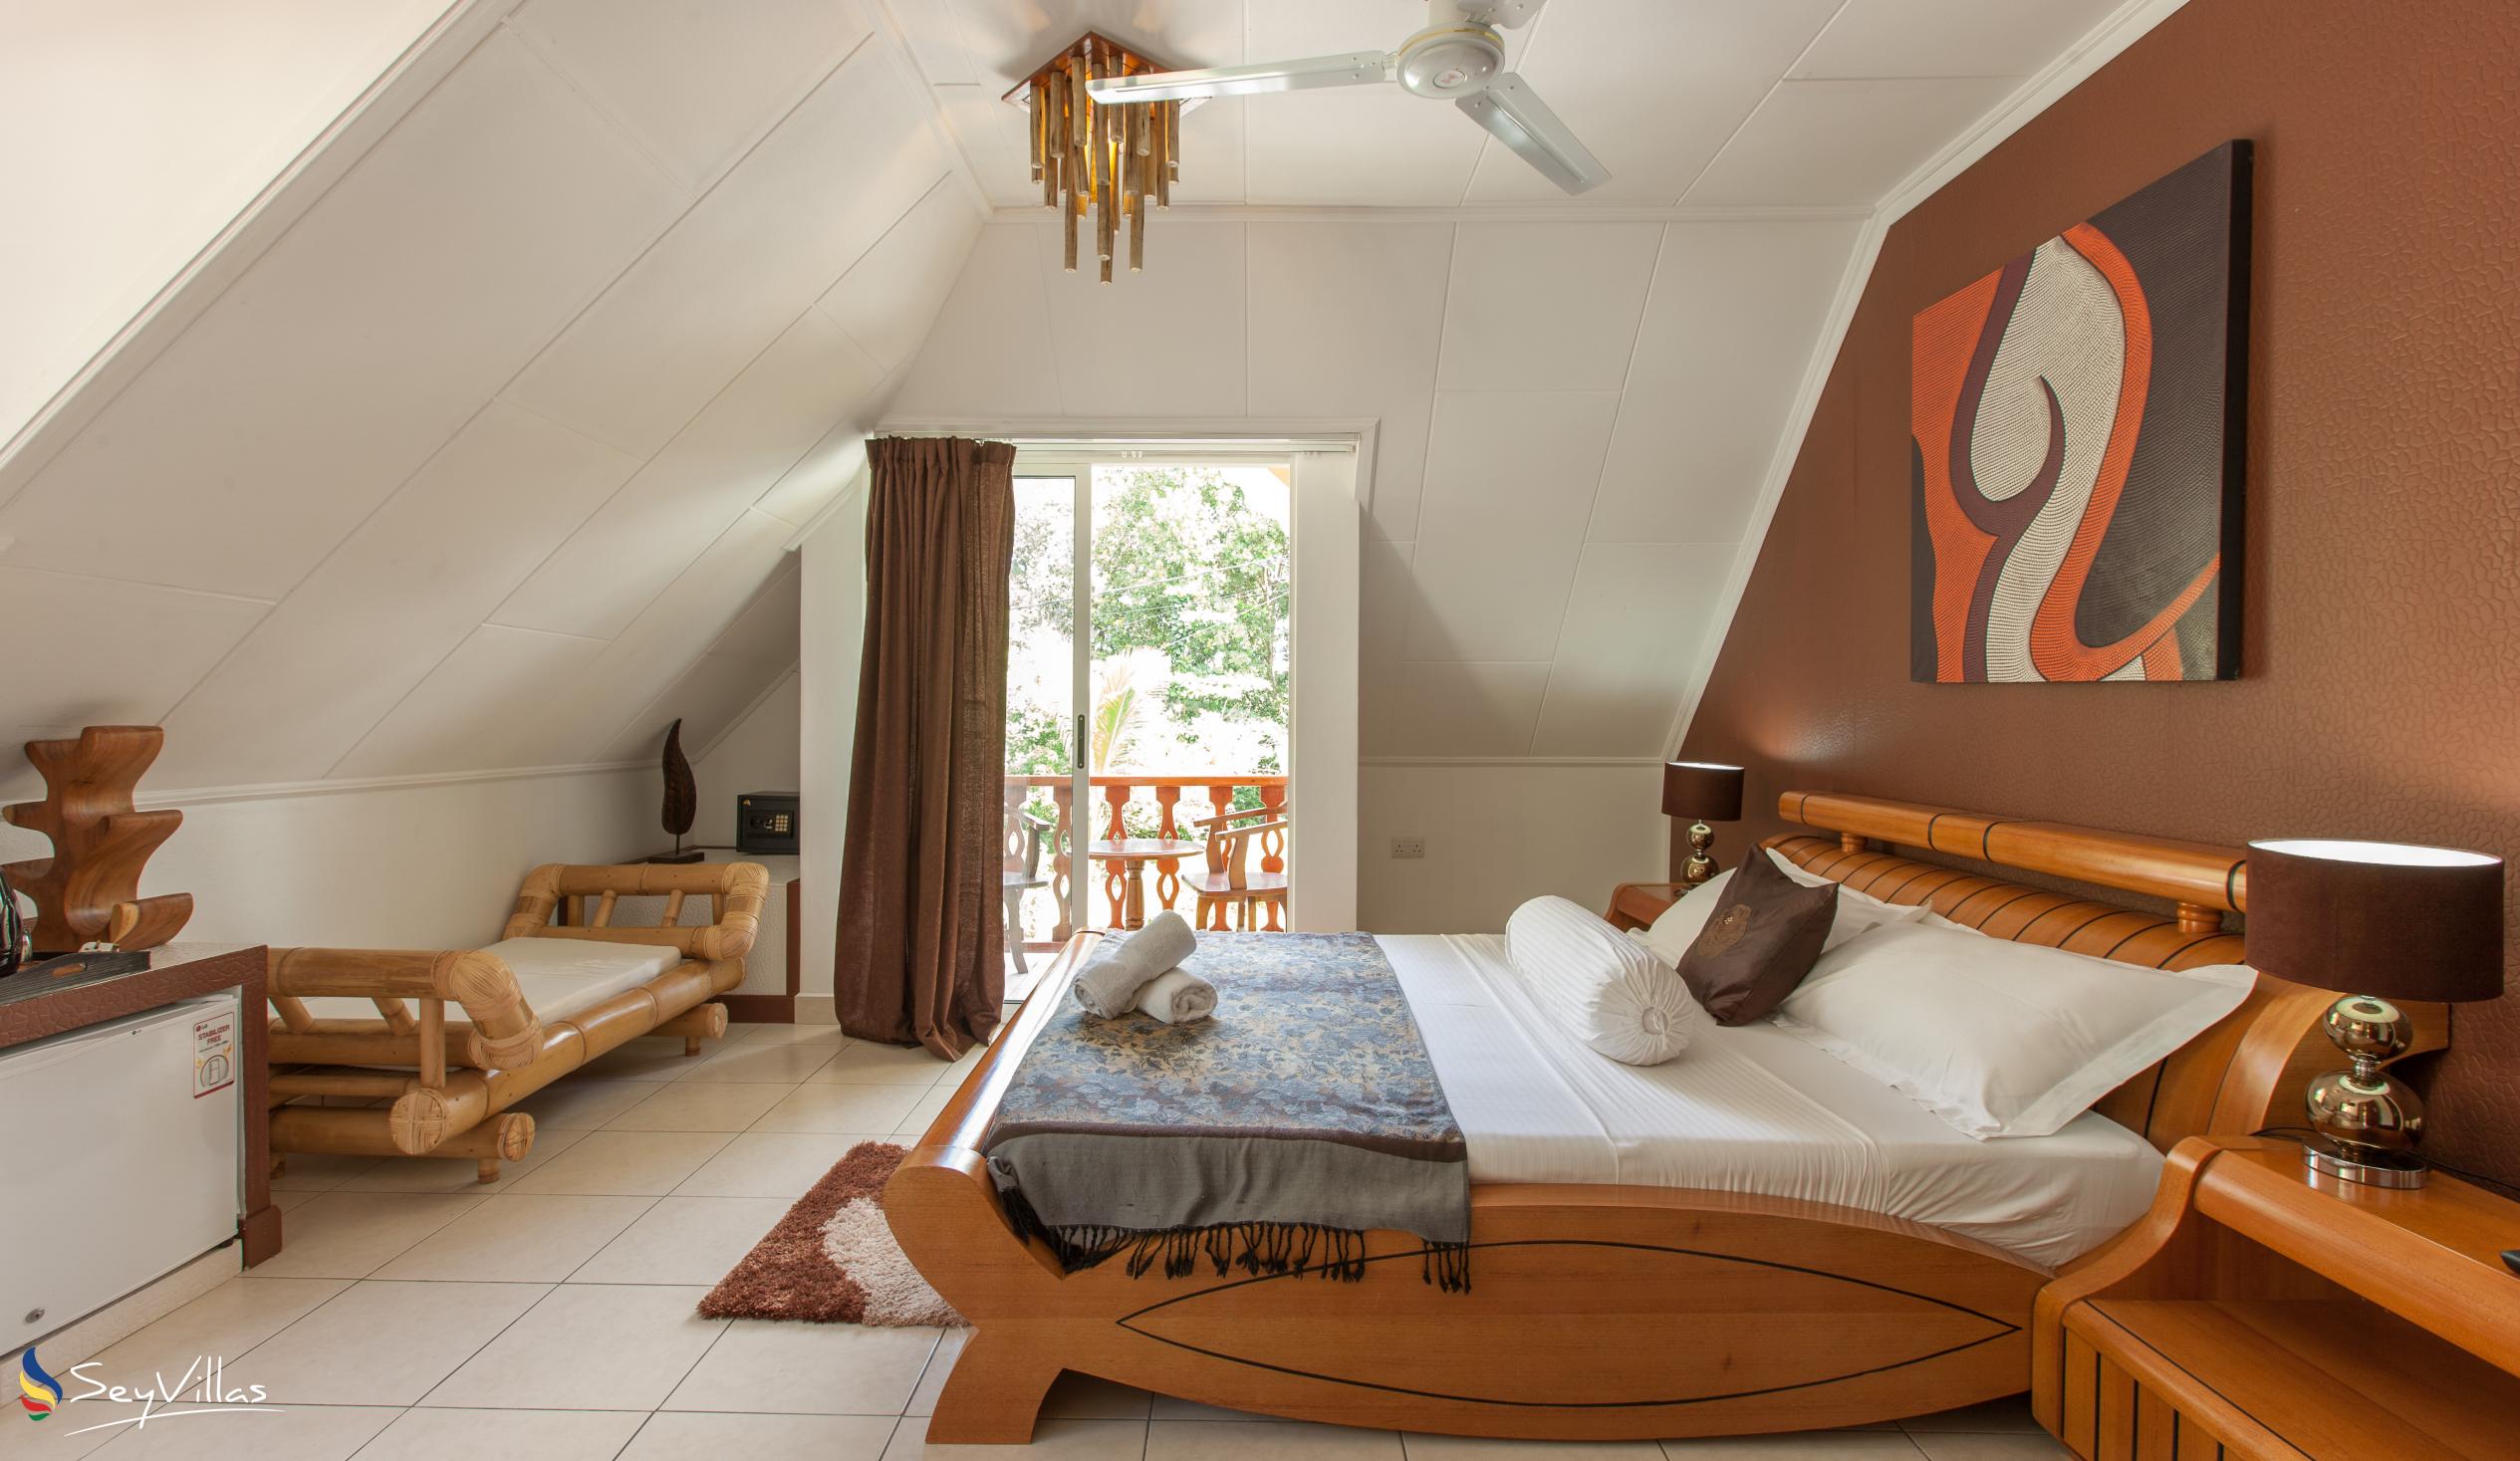 Photo 22: Villa Authentique - Standard Room - La Digue (Seychelles)